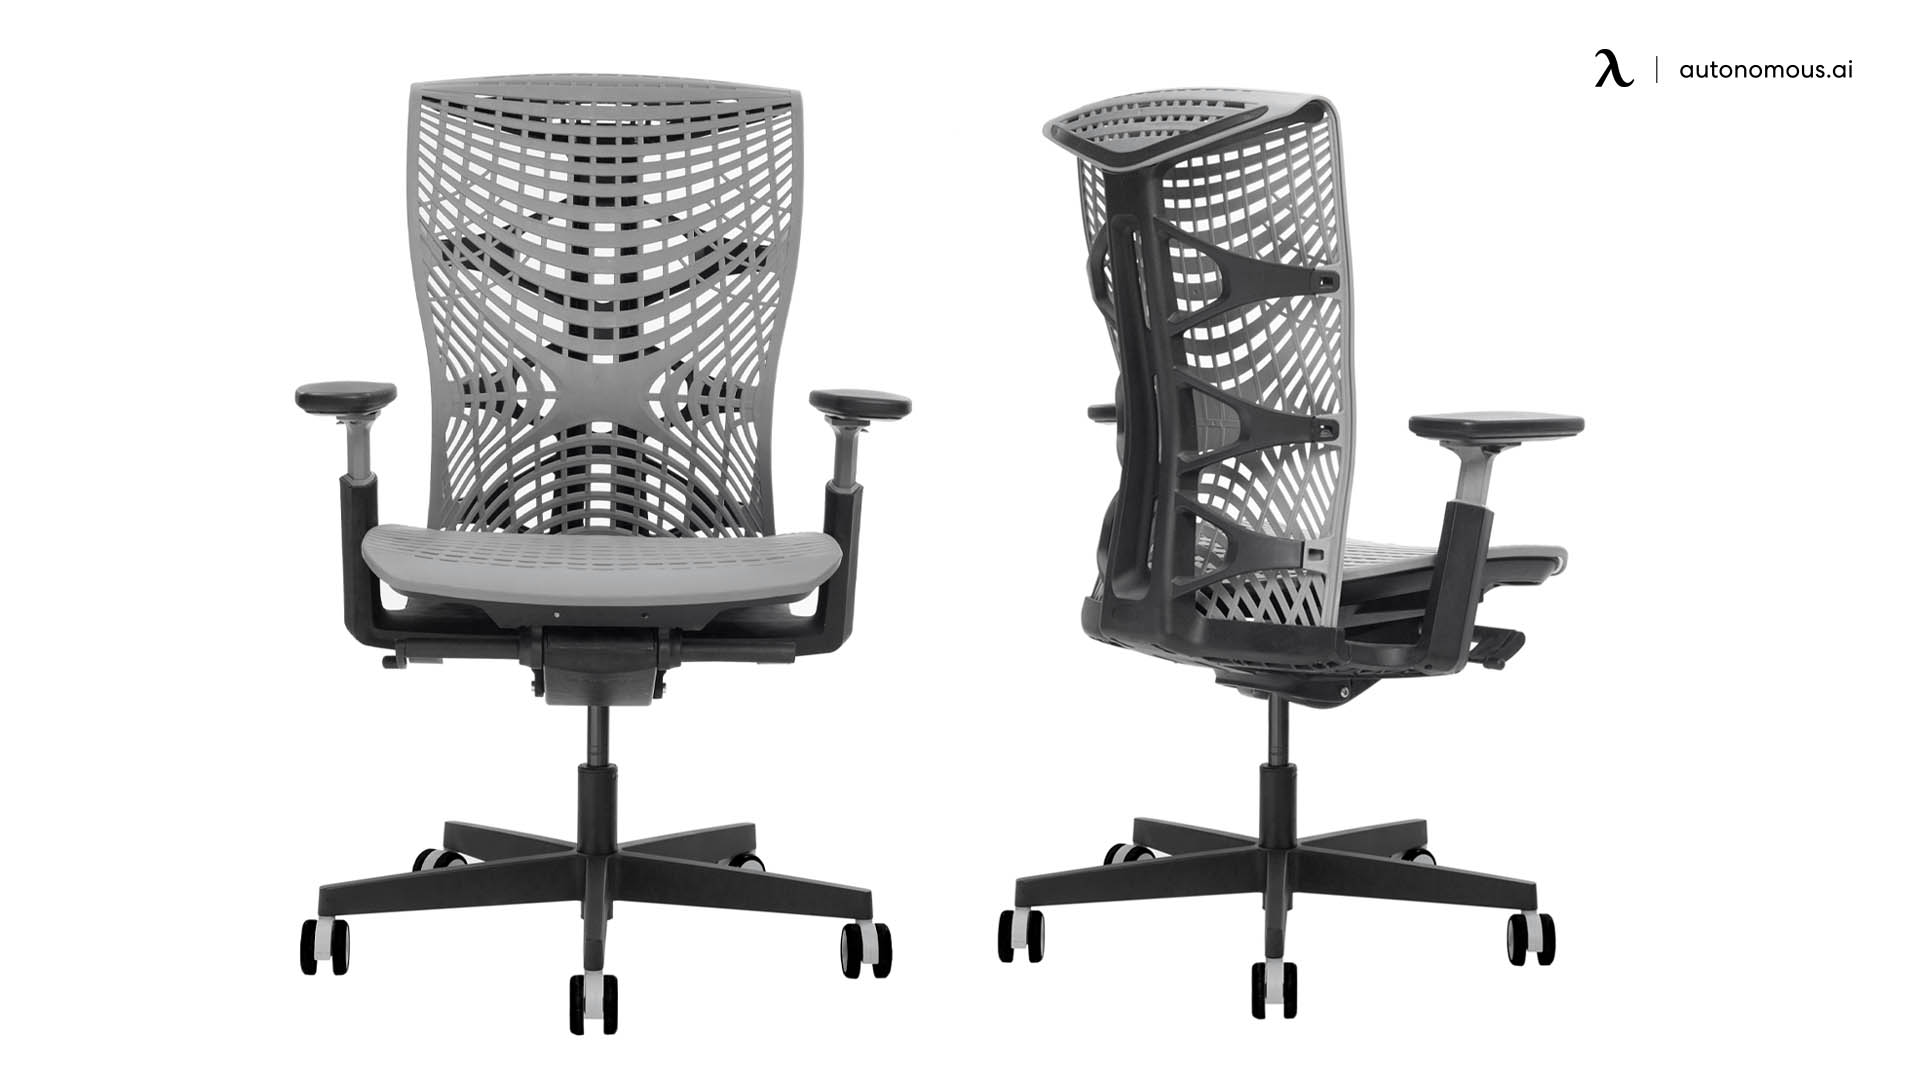 Kinn Chair by Autonomous